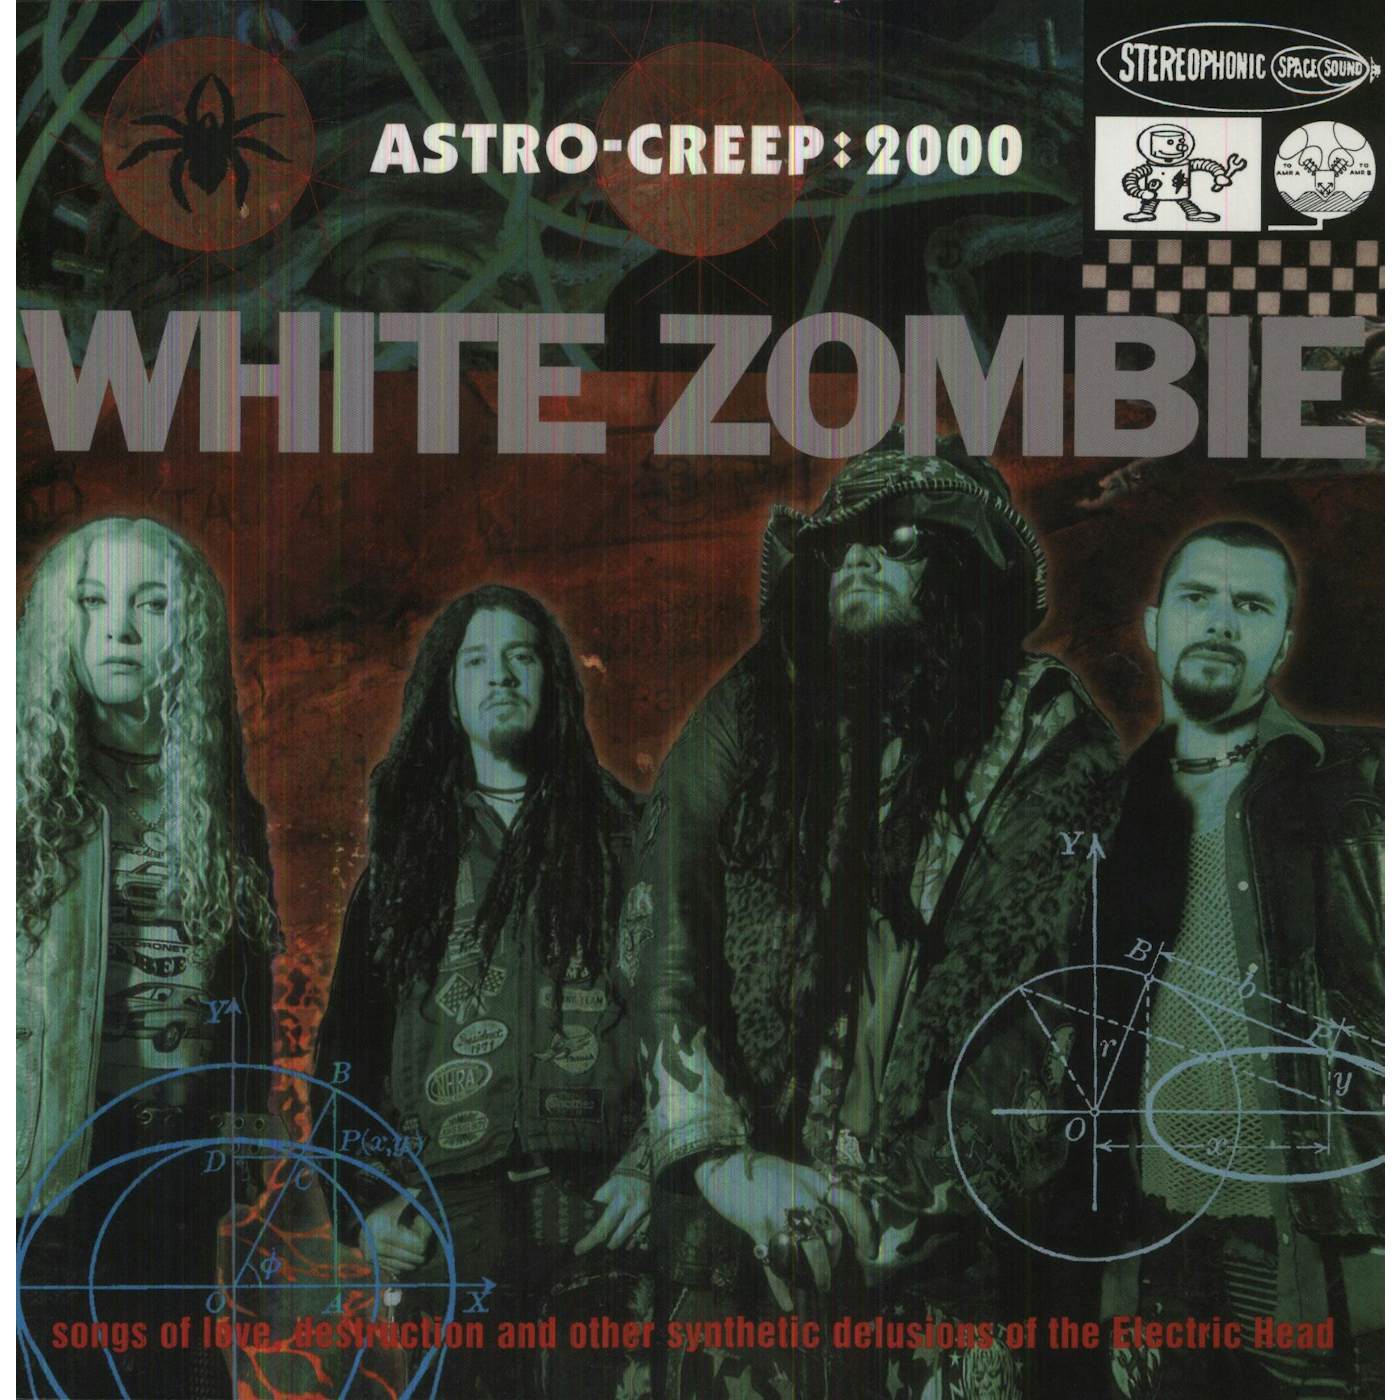 White Zombie ASTRO-CREEP: 2000 Vinyl Record